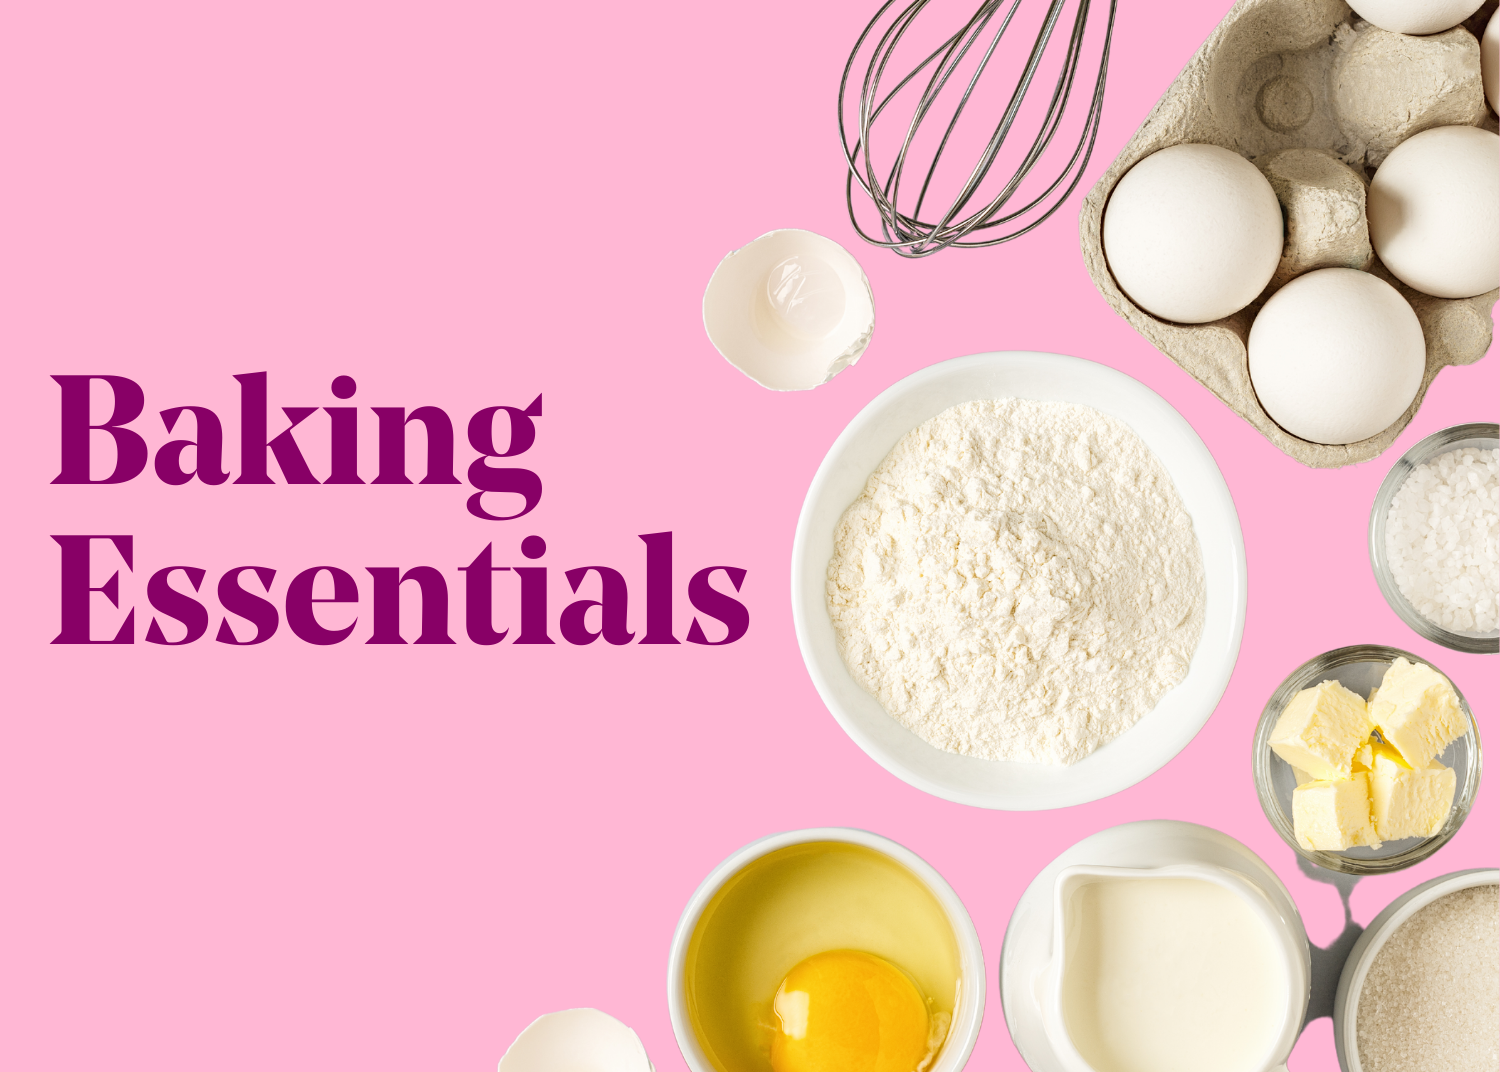 Baking Essentials